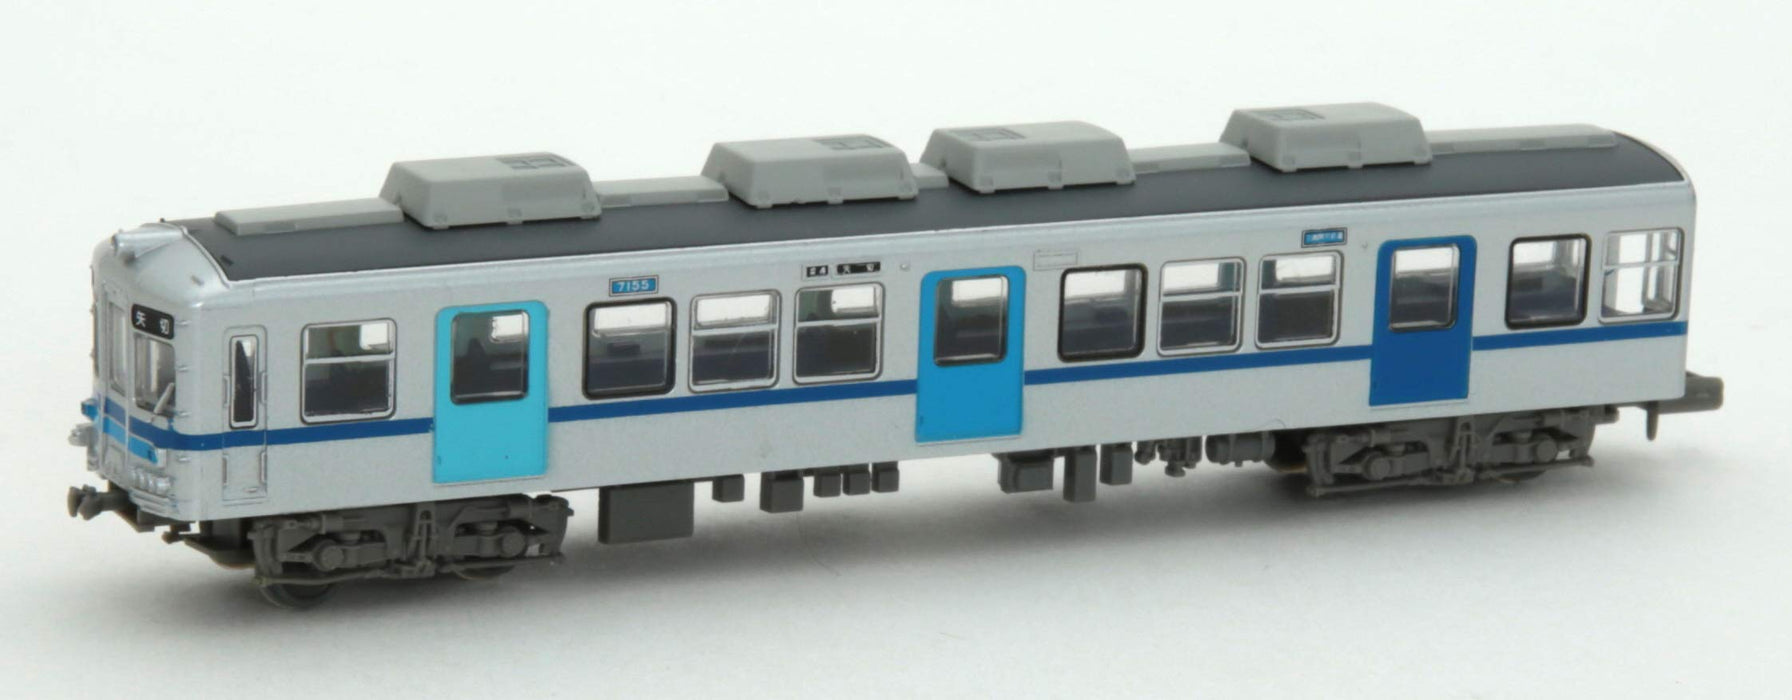 Tomytec Railway Collection 4er-Set Typ 7150 Farbtürwagen Diorama Supplies Limited